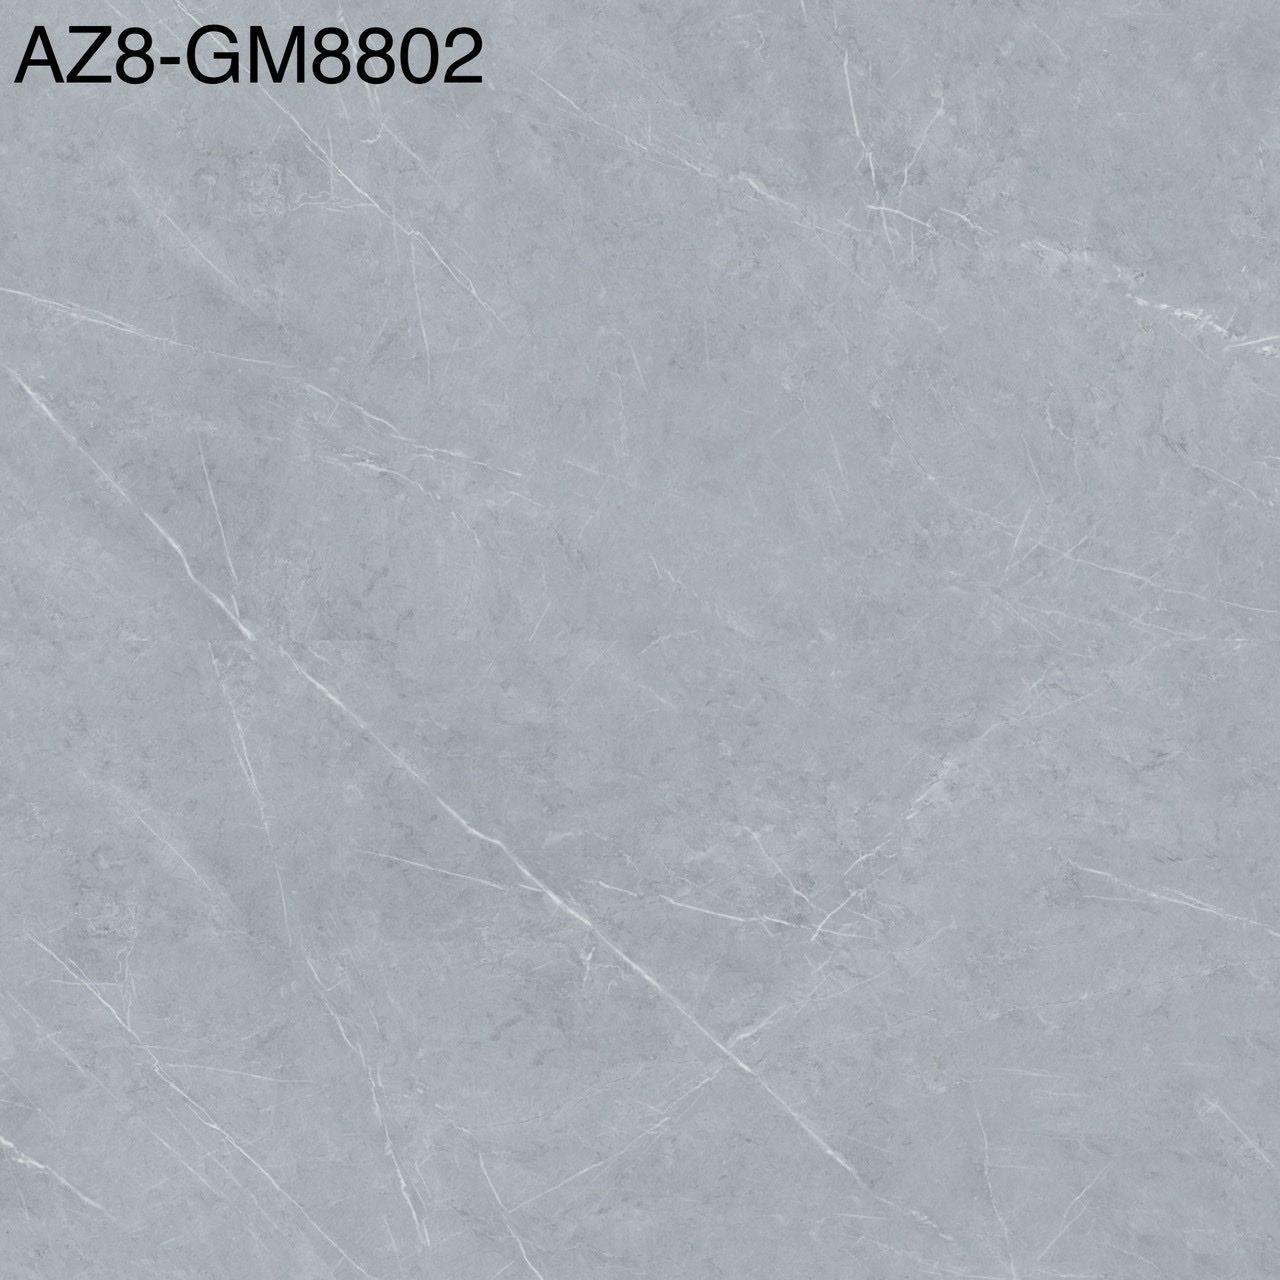 AZ8-GM8802